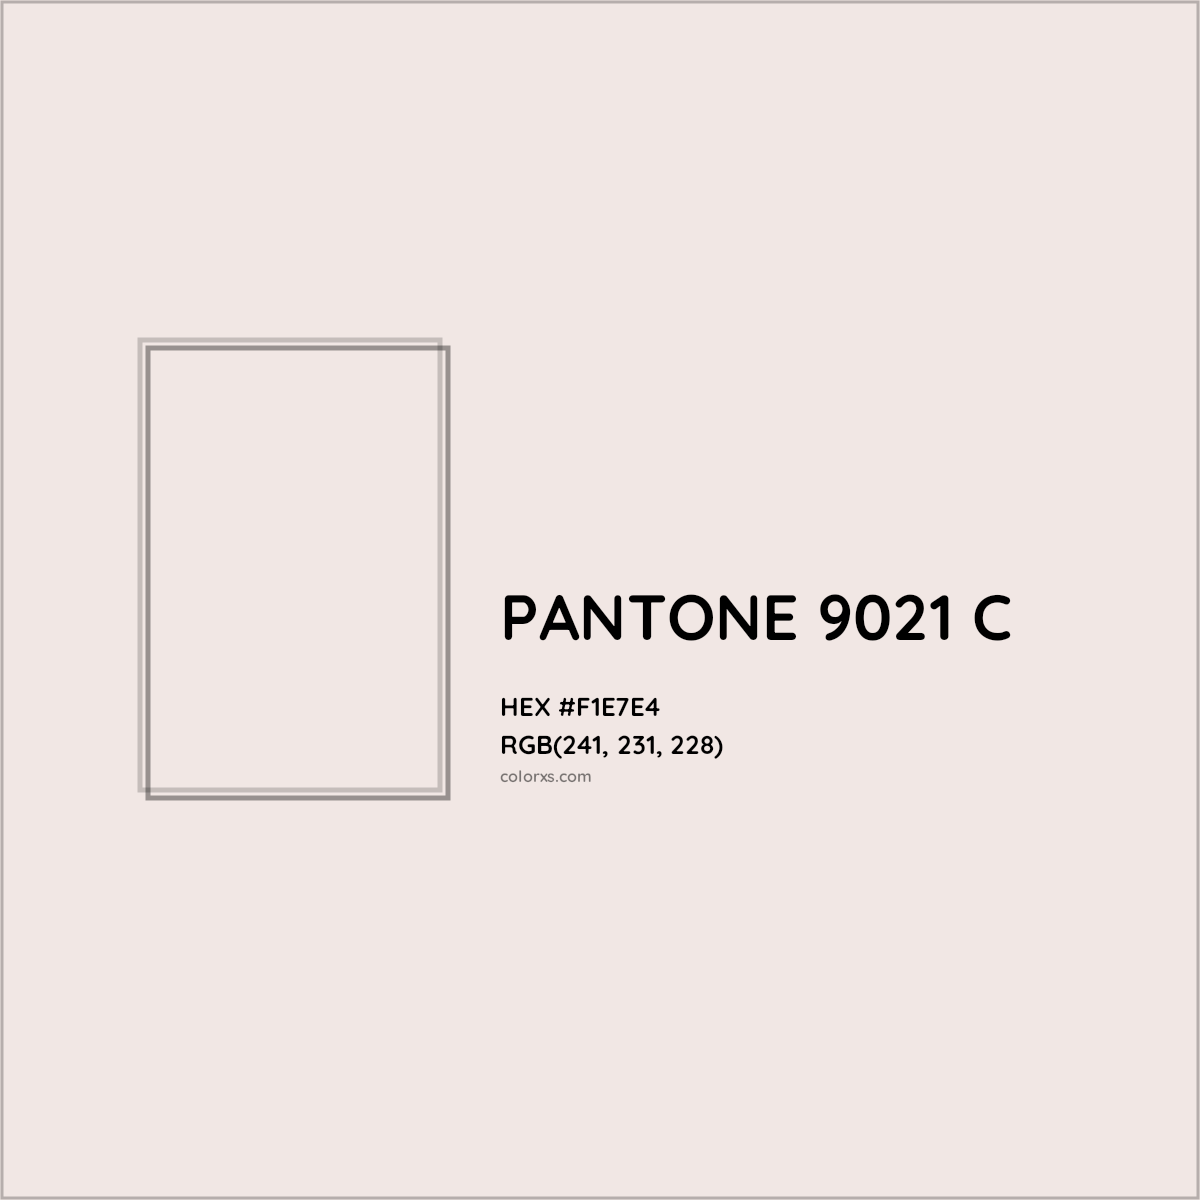 HEX #F1E7E4 PANTONE 9021 C CMS Pantone PMS - Color Code